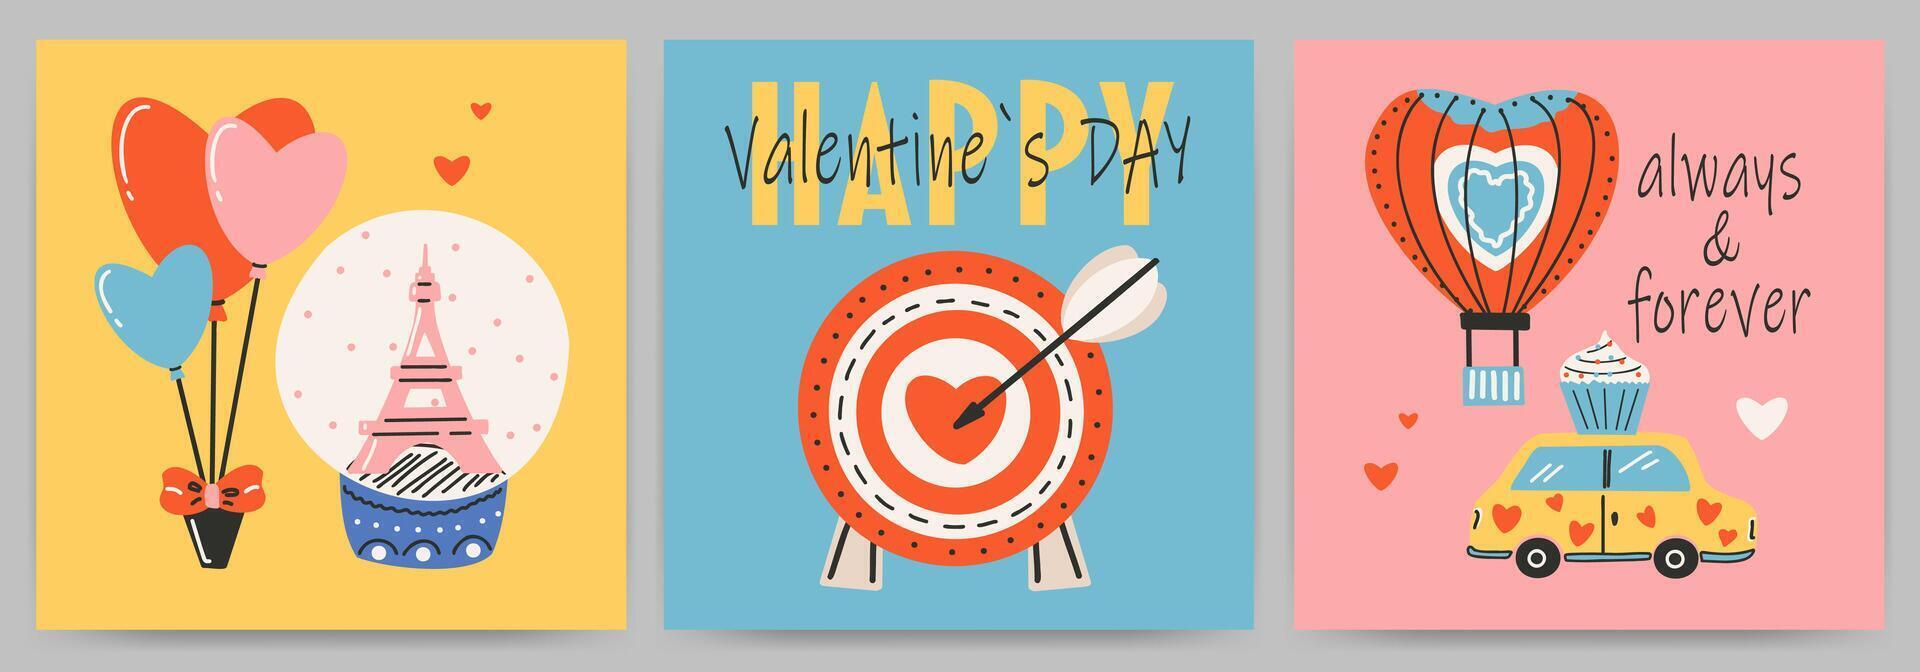 postales plantillas conjunto para Santo San Valentín día, 14 febrero. mano dibujado tarjetas con objetivo, flecha, auto, corazón, texto. vector